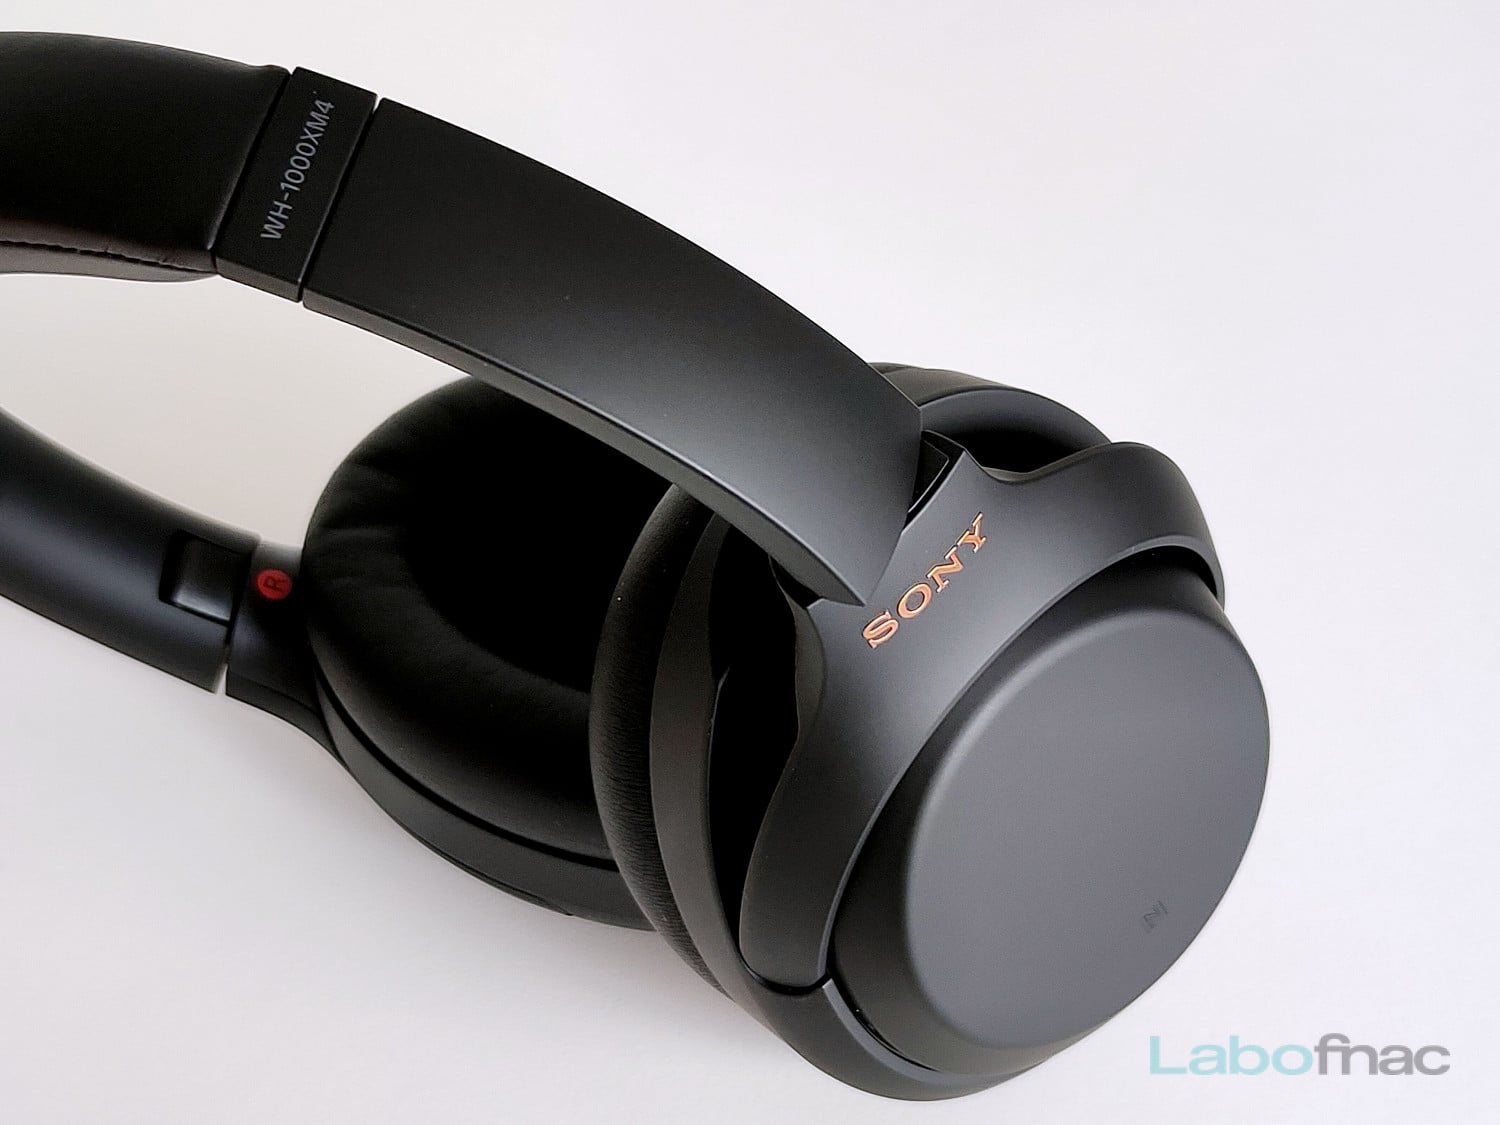 Test Sony WH-1000XM4 : la vraie Hi-Res audio avec assistant vocal